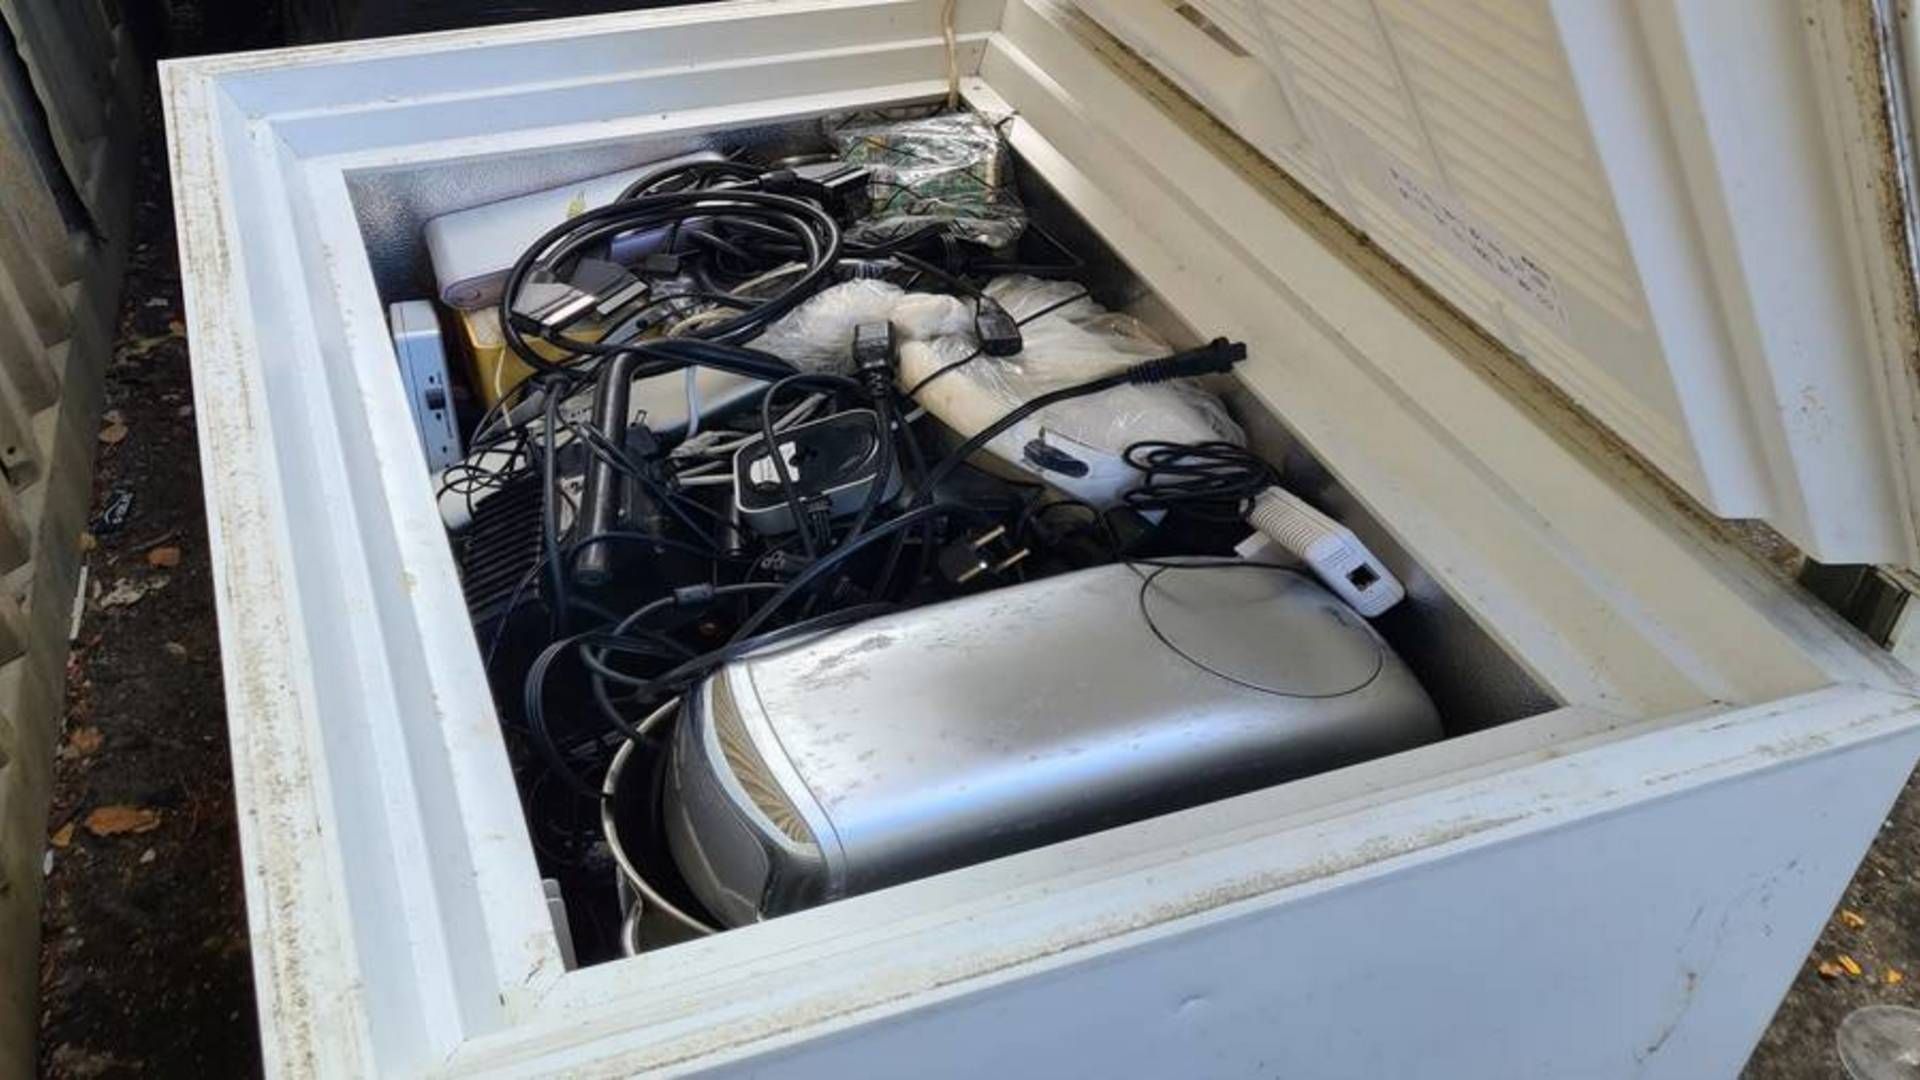 Miljødirektoratet fandt blandt andet kummefrysere fyldt med småt elektronik. | Foto: Miljødirektoratet / PR